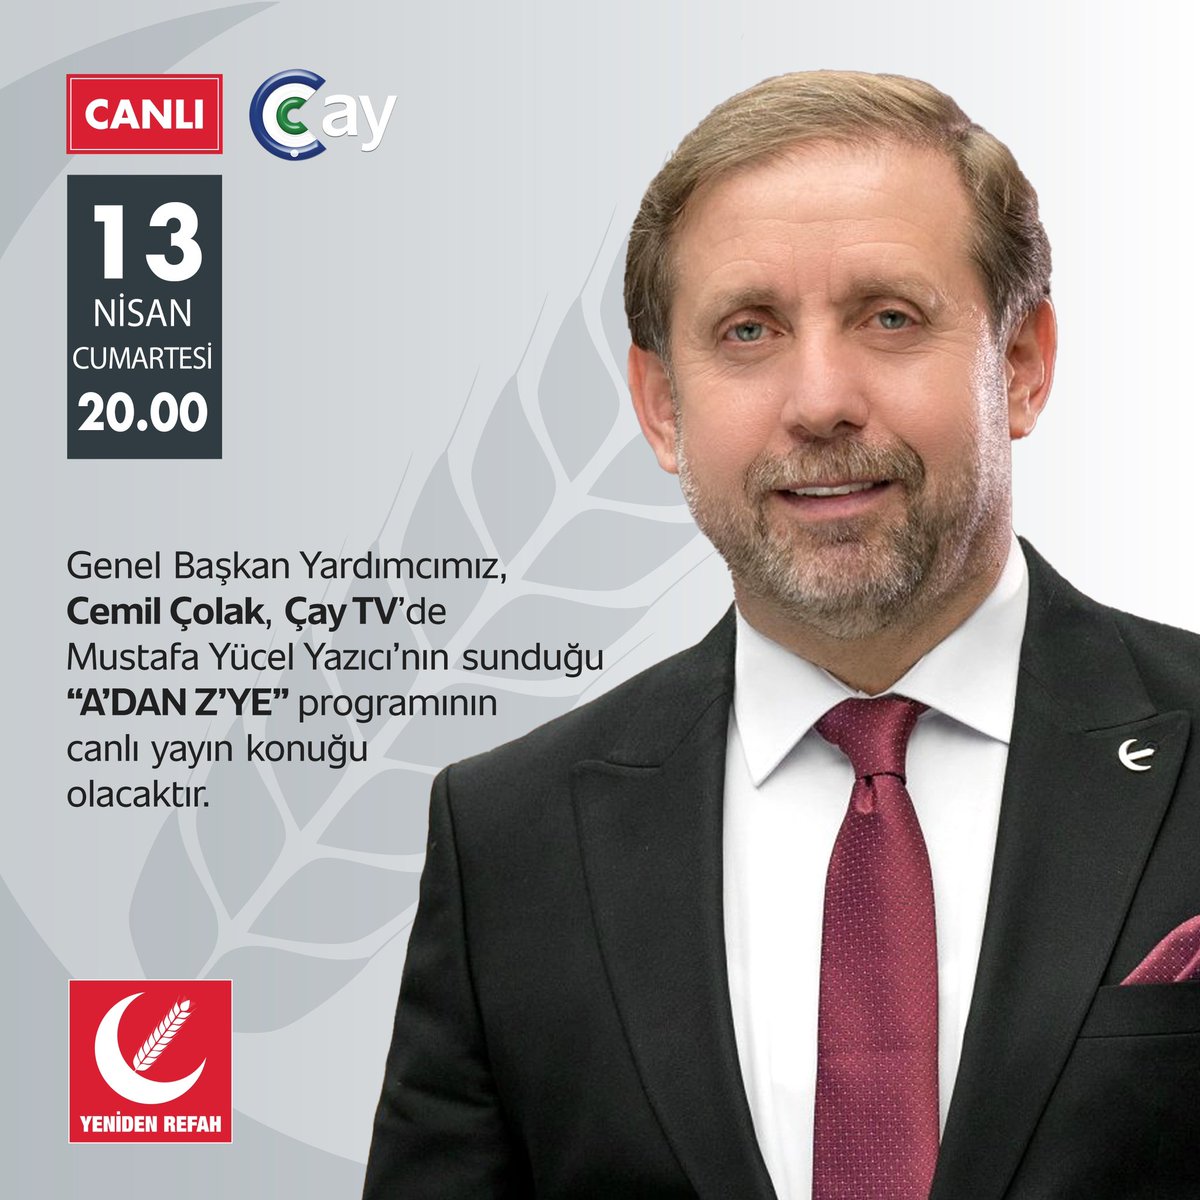 Genel Başkan Yardımcımız, Cemil Çolak, Çay TV’de Mustafa Yücel Yazıcı’nın sunduğu “A’DAN Z’YE” programının canlı yayın konuğu olacaktır. 📅 13 Nisan Cumartesi (Bu Akşam) 🕐 20.00 📡 Çay TV